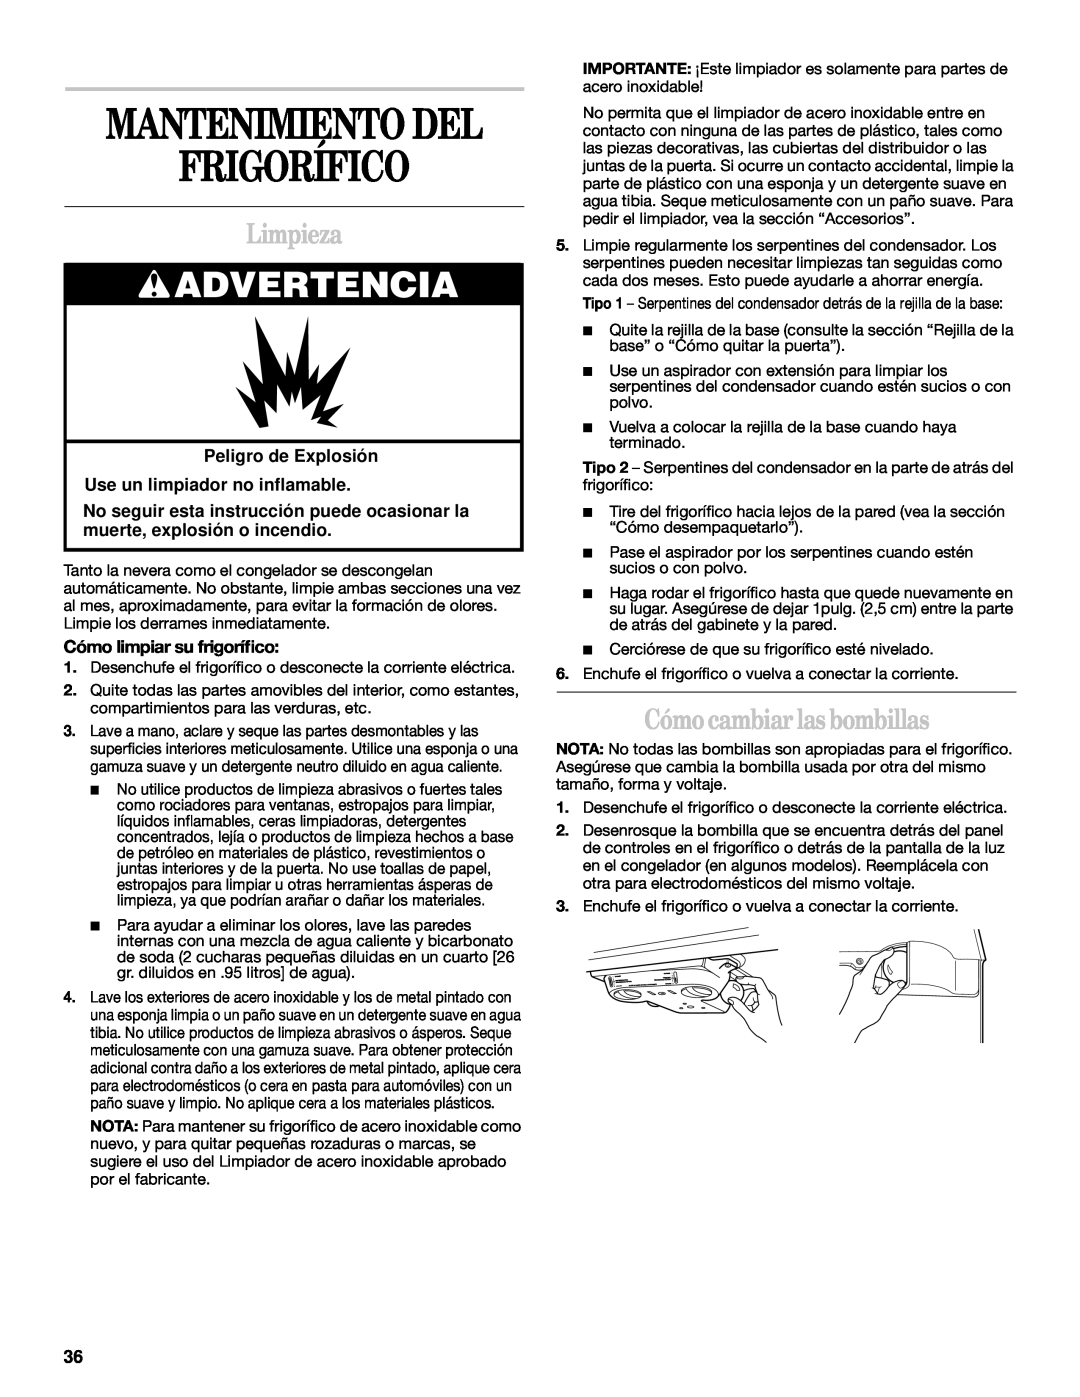 Whirlpool 2218585 manual Mantenimiento Del, Limpieza, Cómo cambiar las bombillas, Cómo limpiar su frigoríﬁco, Frigorífico 